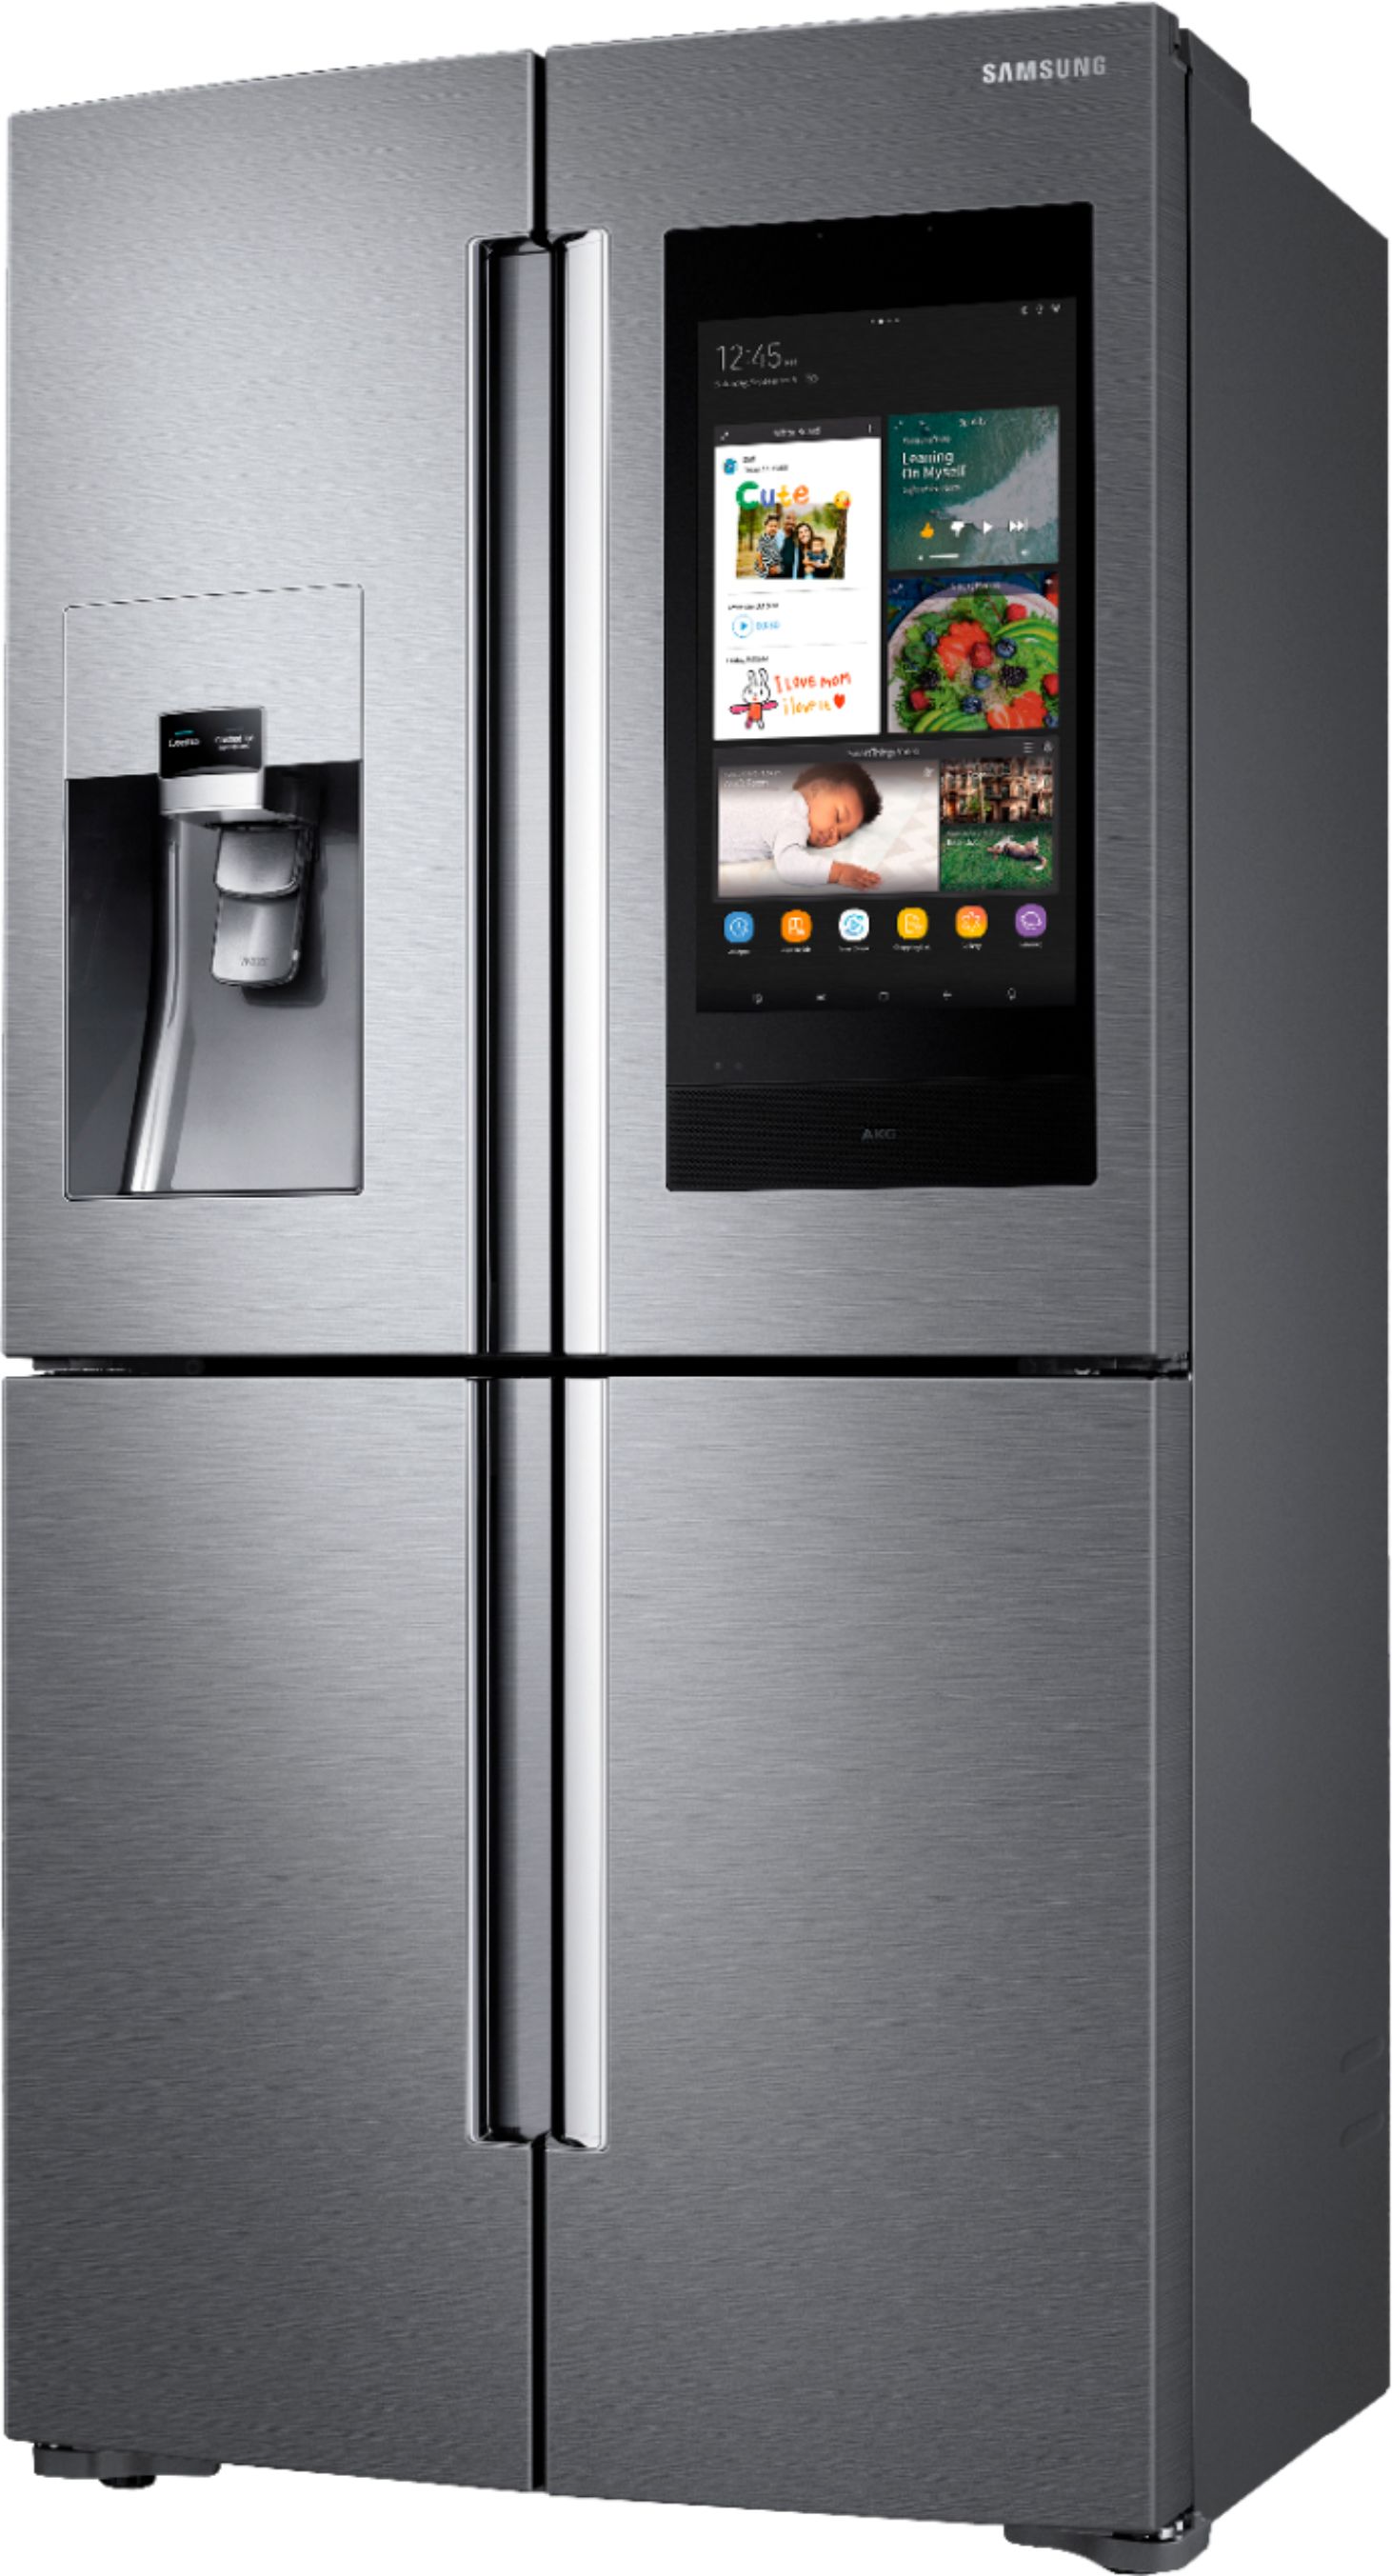 Left View: Samsung - Family Hub 22 Cu. Ft. 4-Door Flex French Door Counter-Depth Fingerprint Resistant Refrigerator - Stainless steel